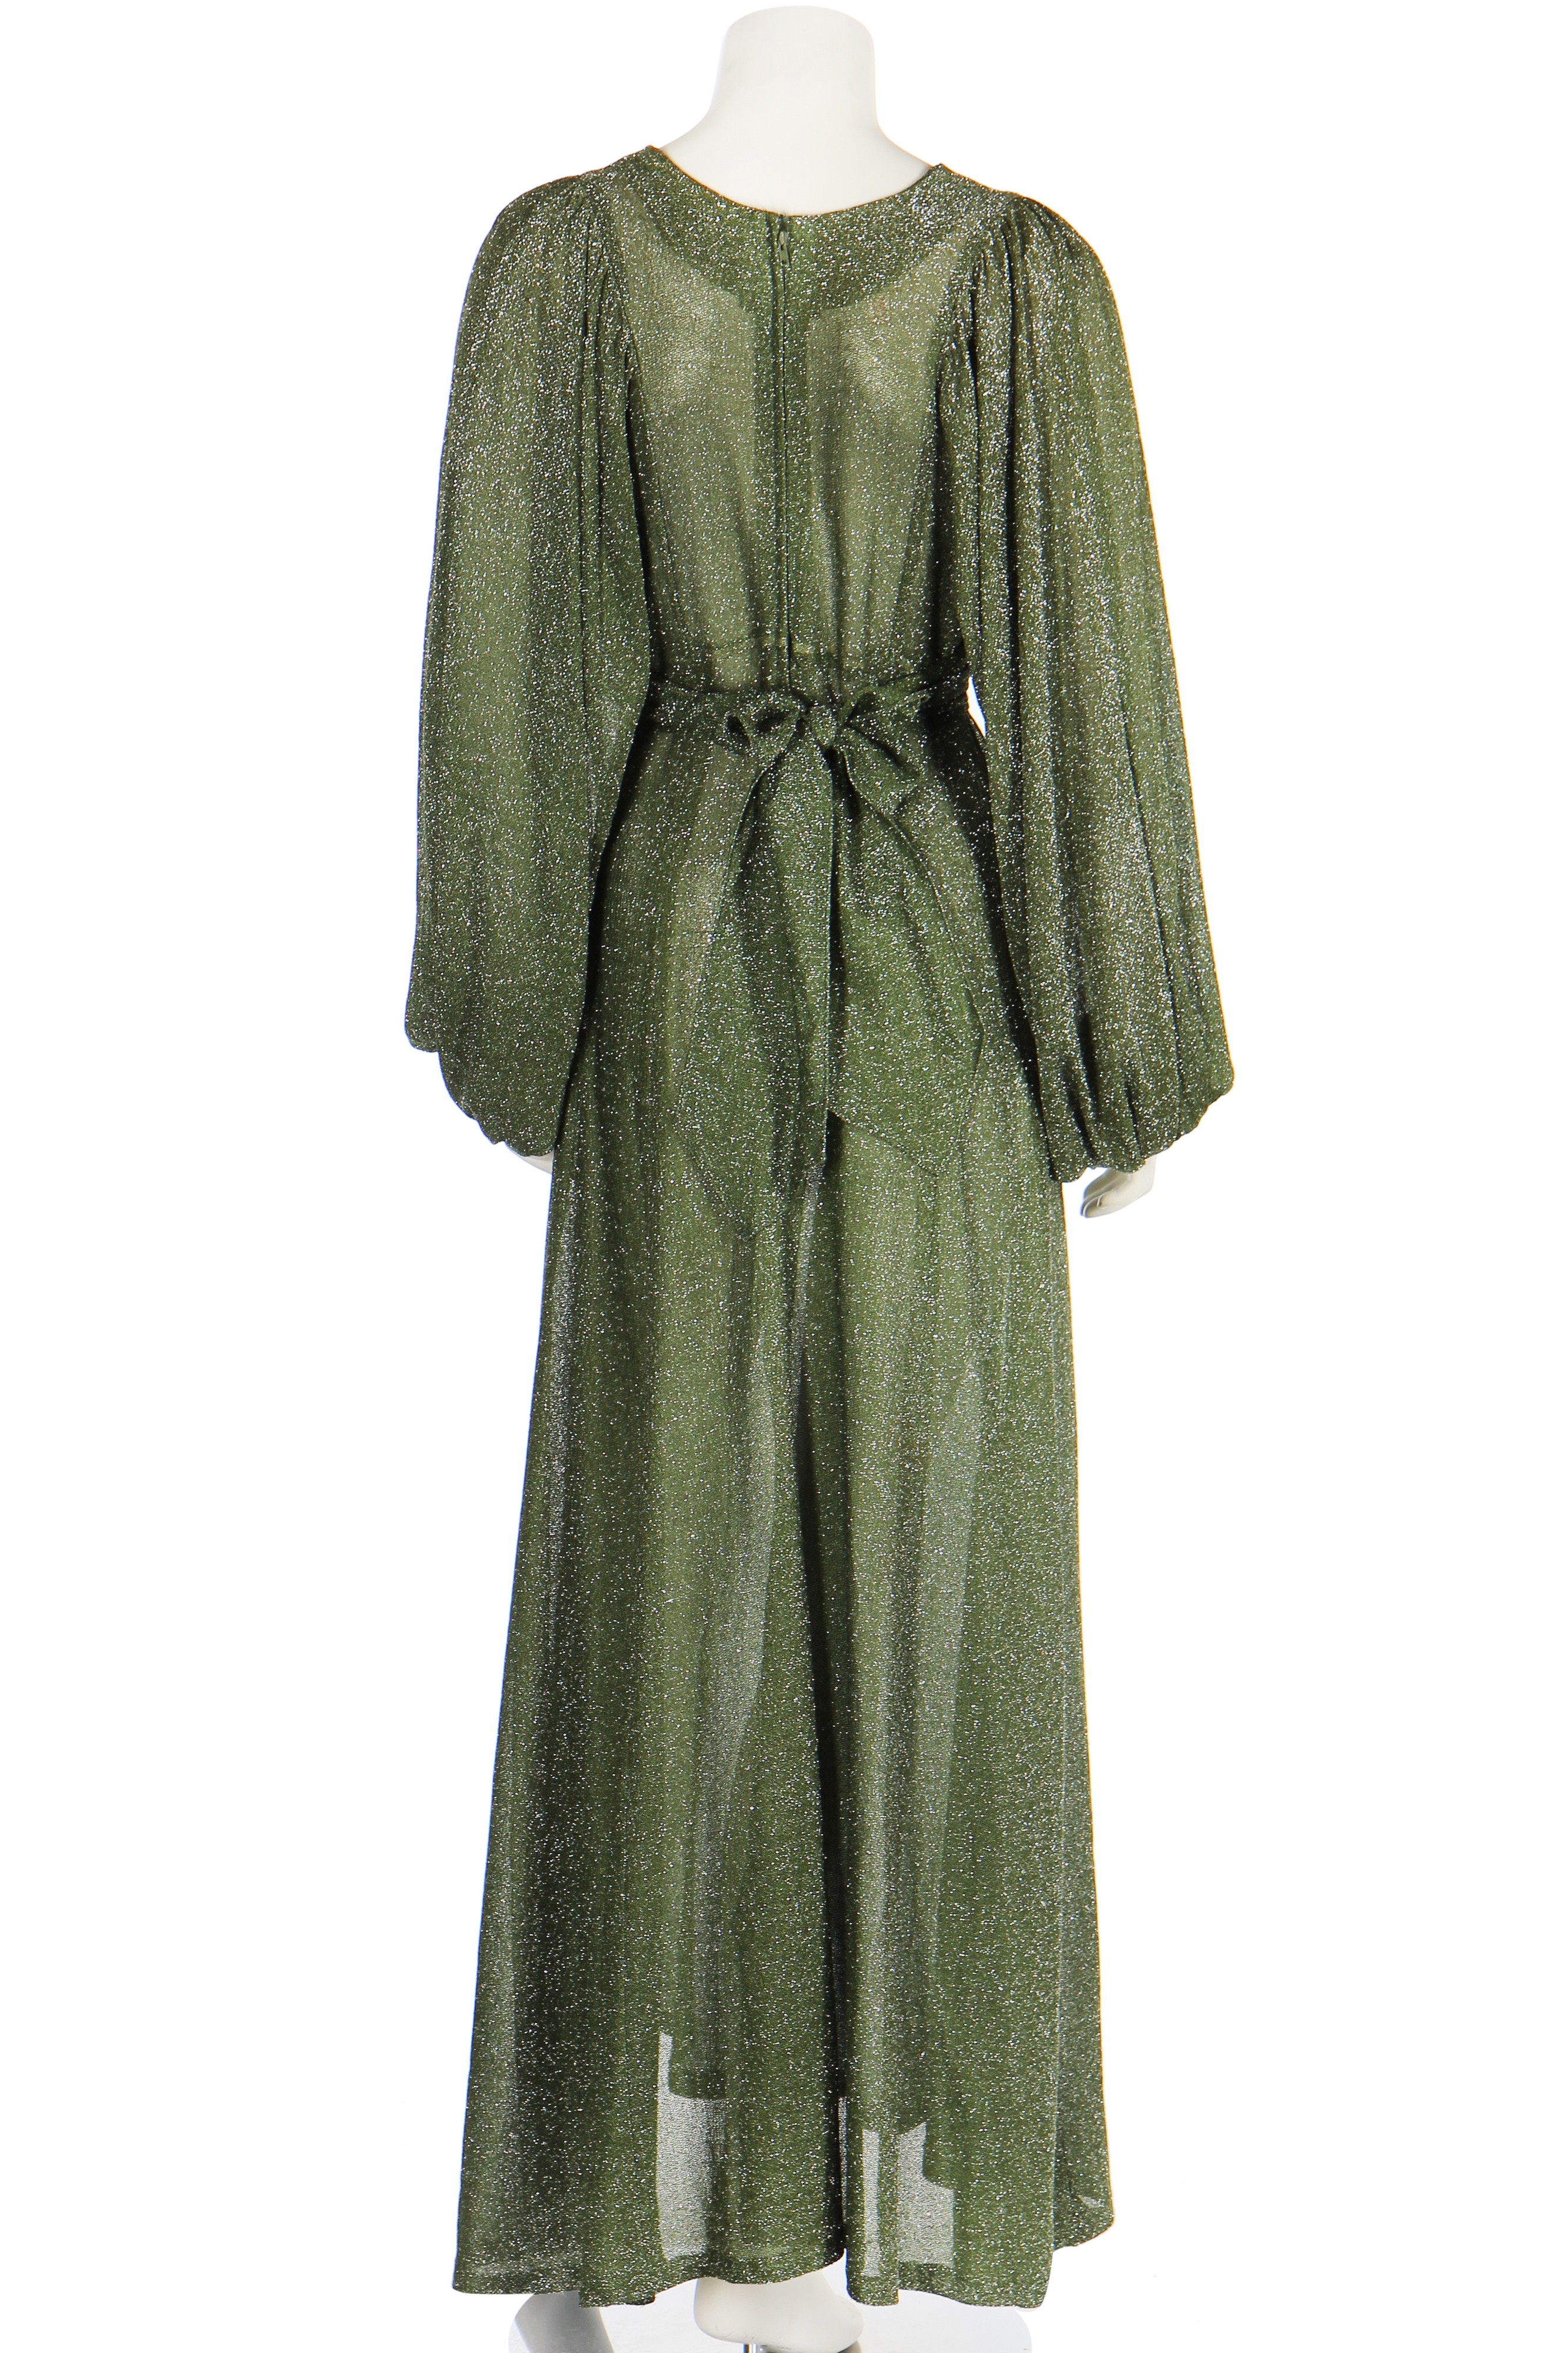 Lot 132 - An Ossie Clark for Radley green lurex dress,